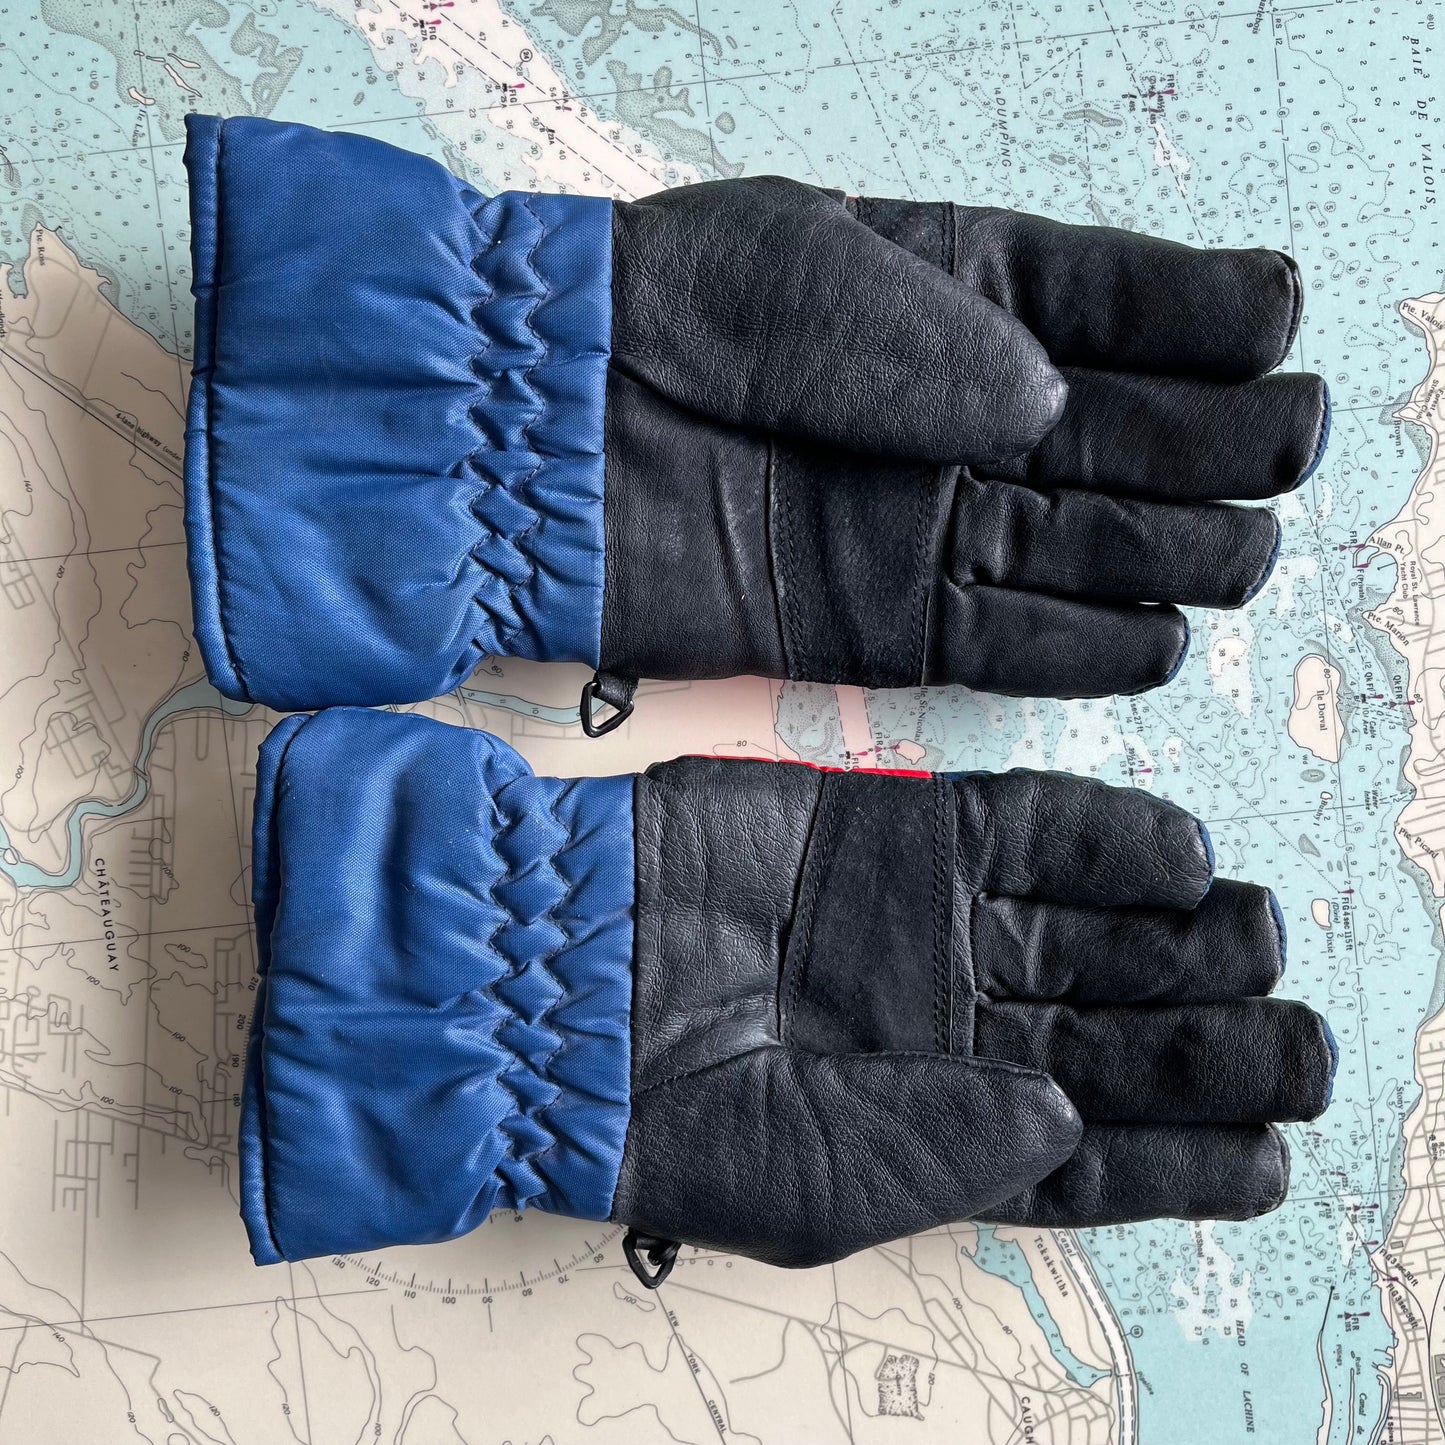 Retro Ganka Leather and Nylon Snowmobile Gloves